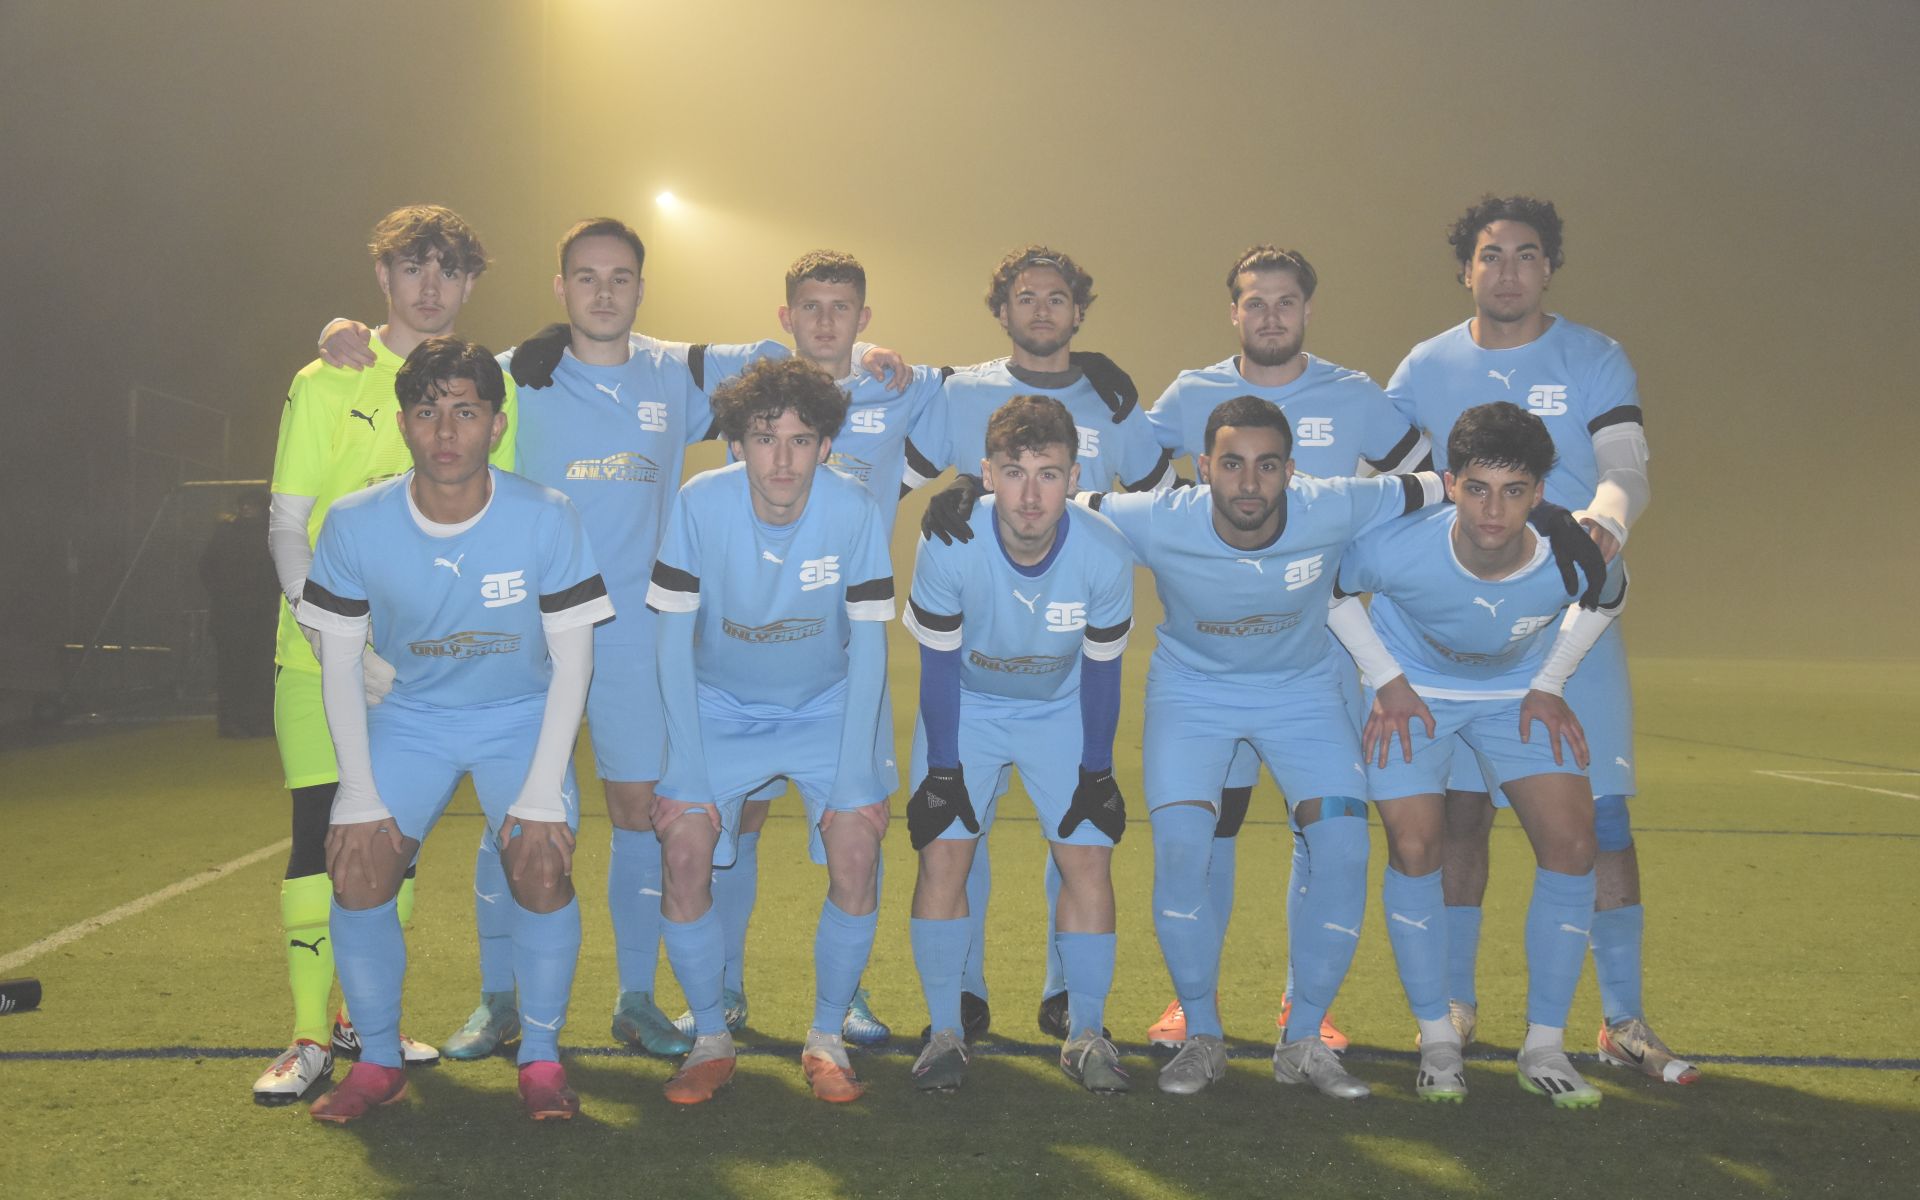 Mannschaftsbild des Teams von Simpletransfer. 10 Feldspieler in hellblauen Trikots und Hosen mit Simpletransfer-Logo und ein Torhüter posieren auf dem Platz für ein Foto.